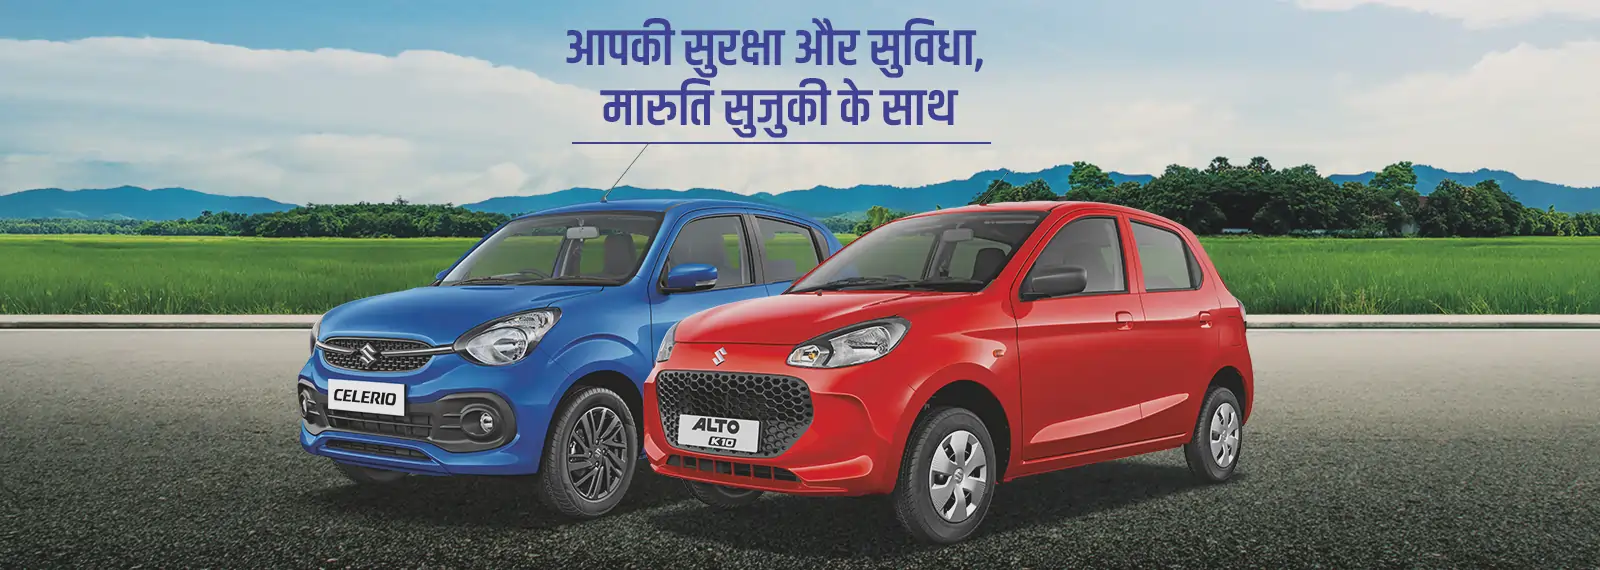 Future Autowheels Pvt Ltd Laxman Jhula Road, Rishikesh